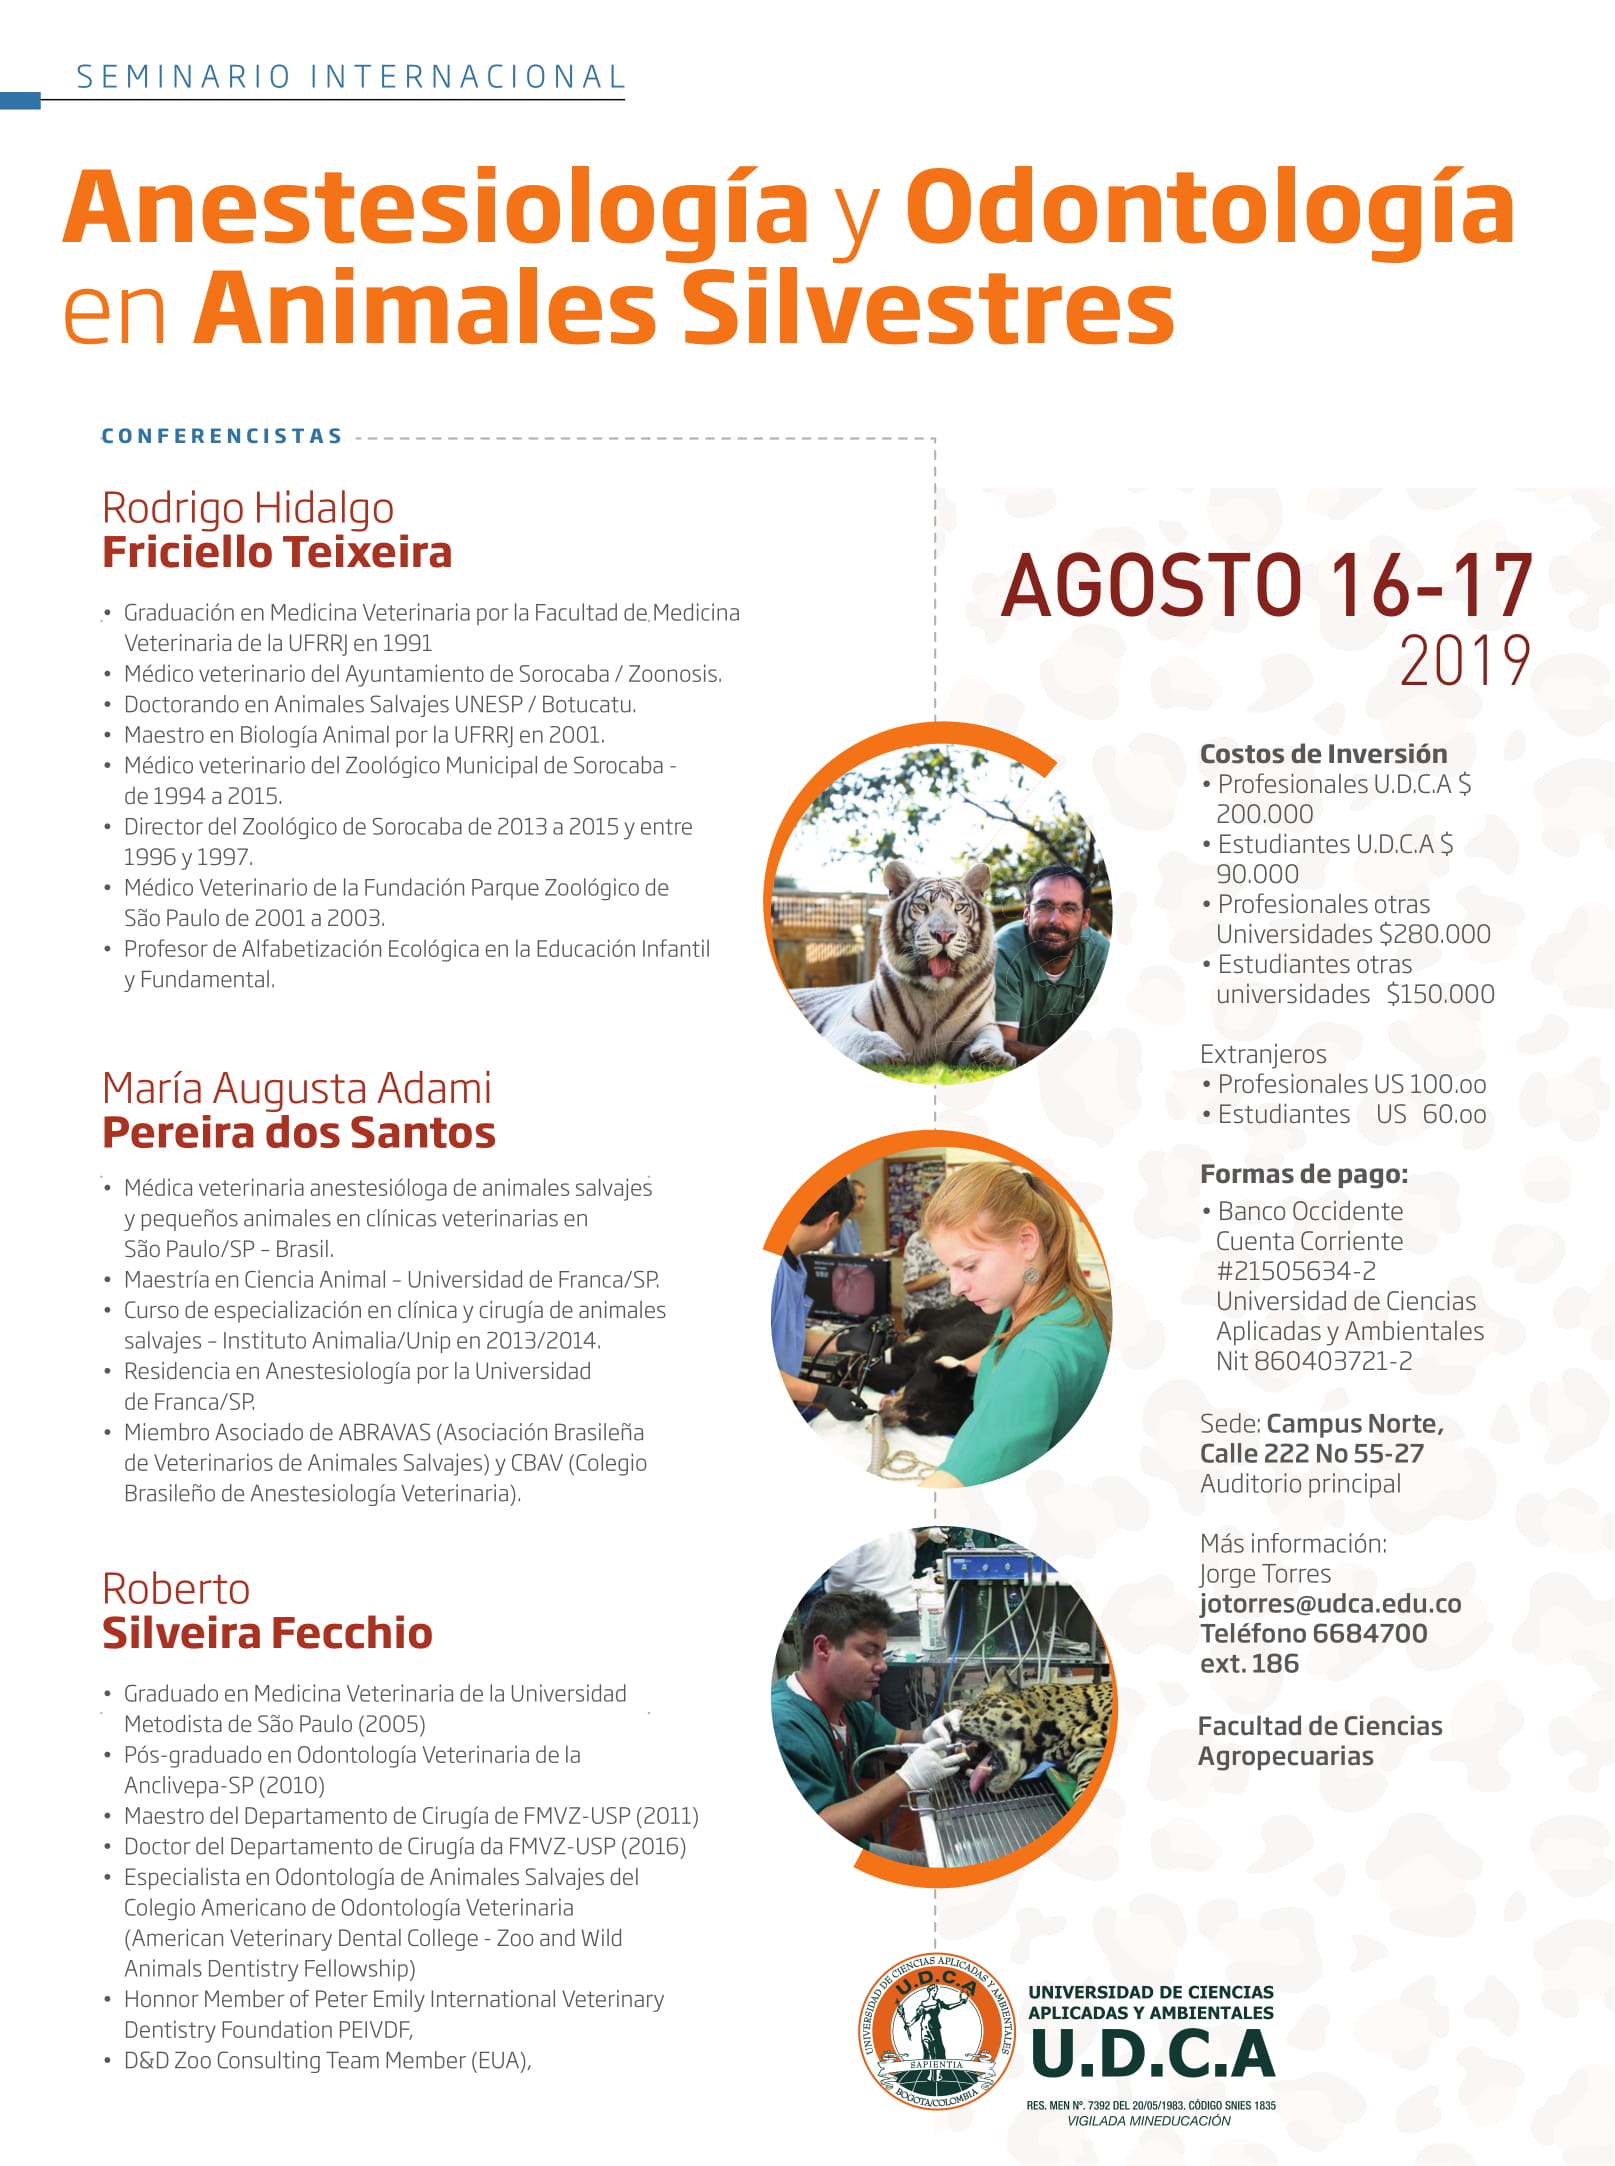 Internacional de Anestesiología y Odontología en Animales Silvestres